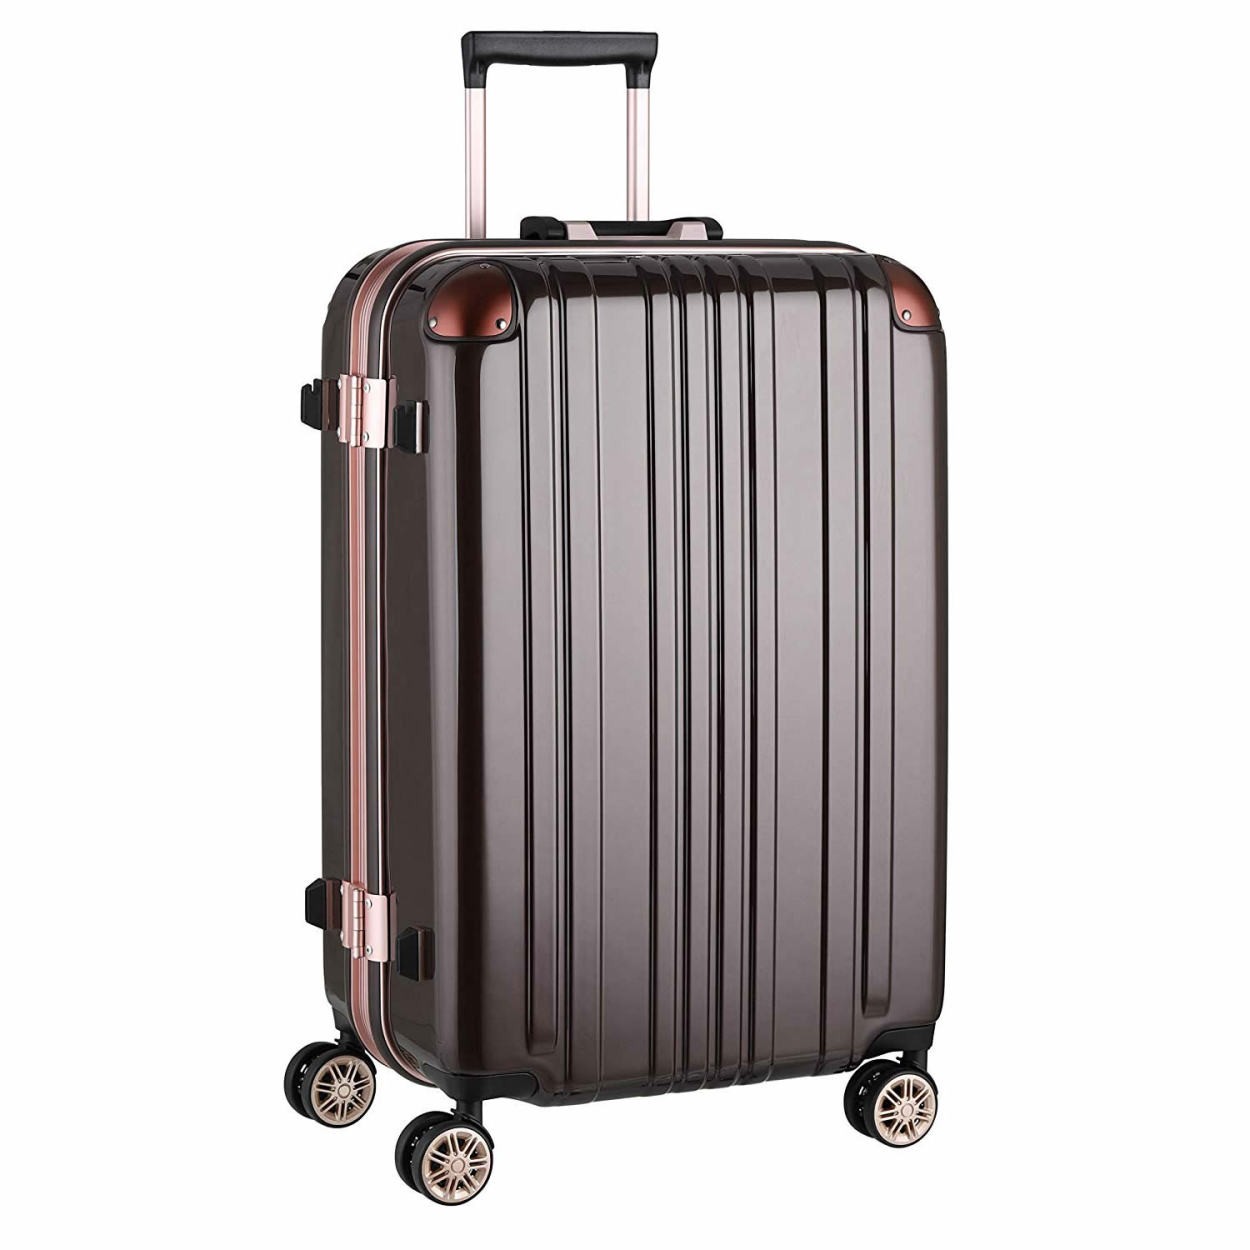 スーツケース キャリーバッグ トランクケース レディースバッグ Lサイズ 大型 超軽量 おしゃれ かわいい キャリーケース キャリーバッグ  5122-67